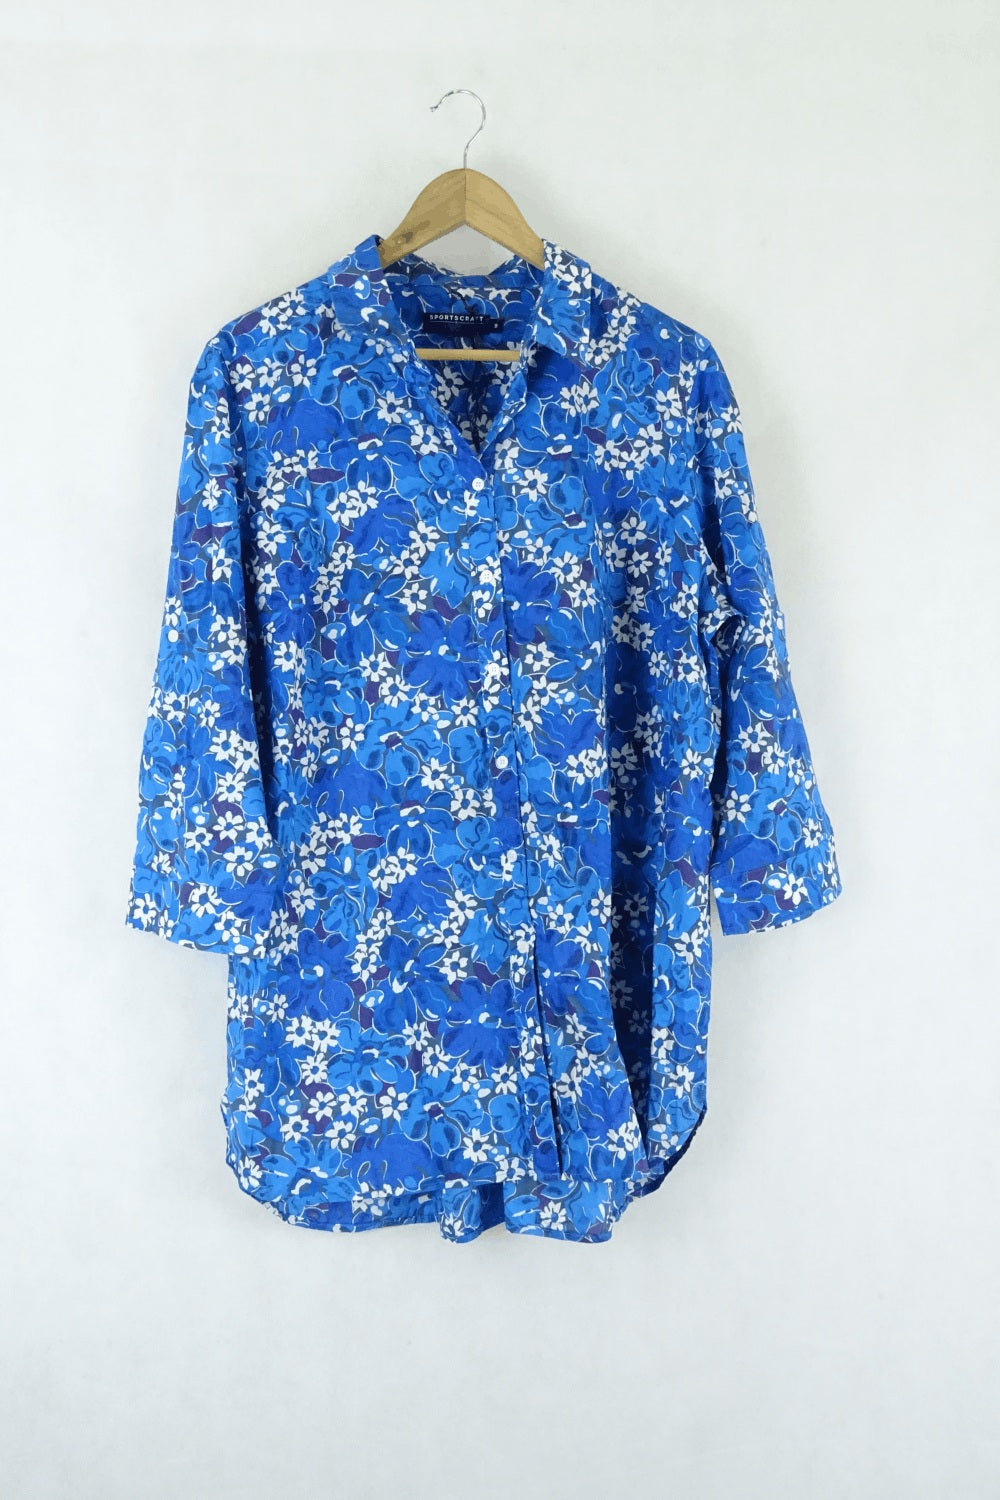 Sportscraft Blue Floral Shirt 16